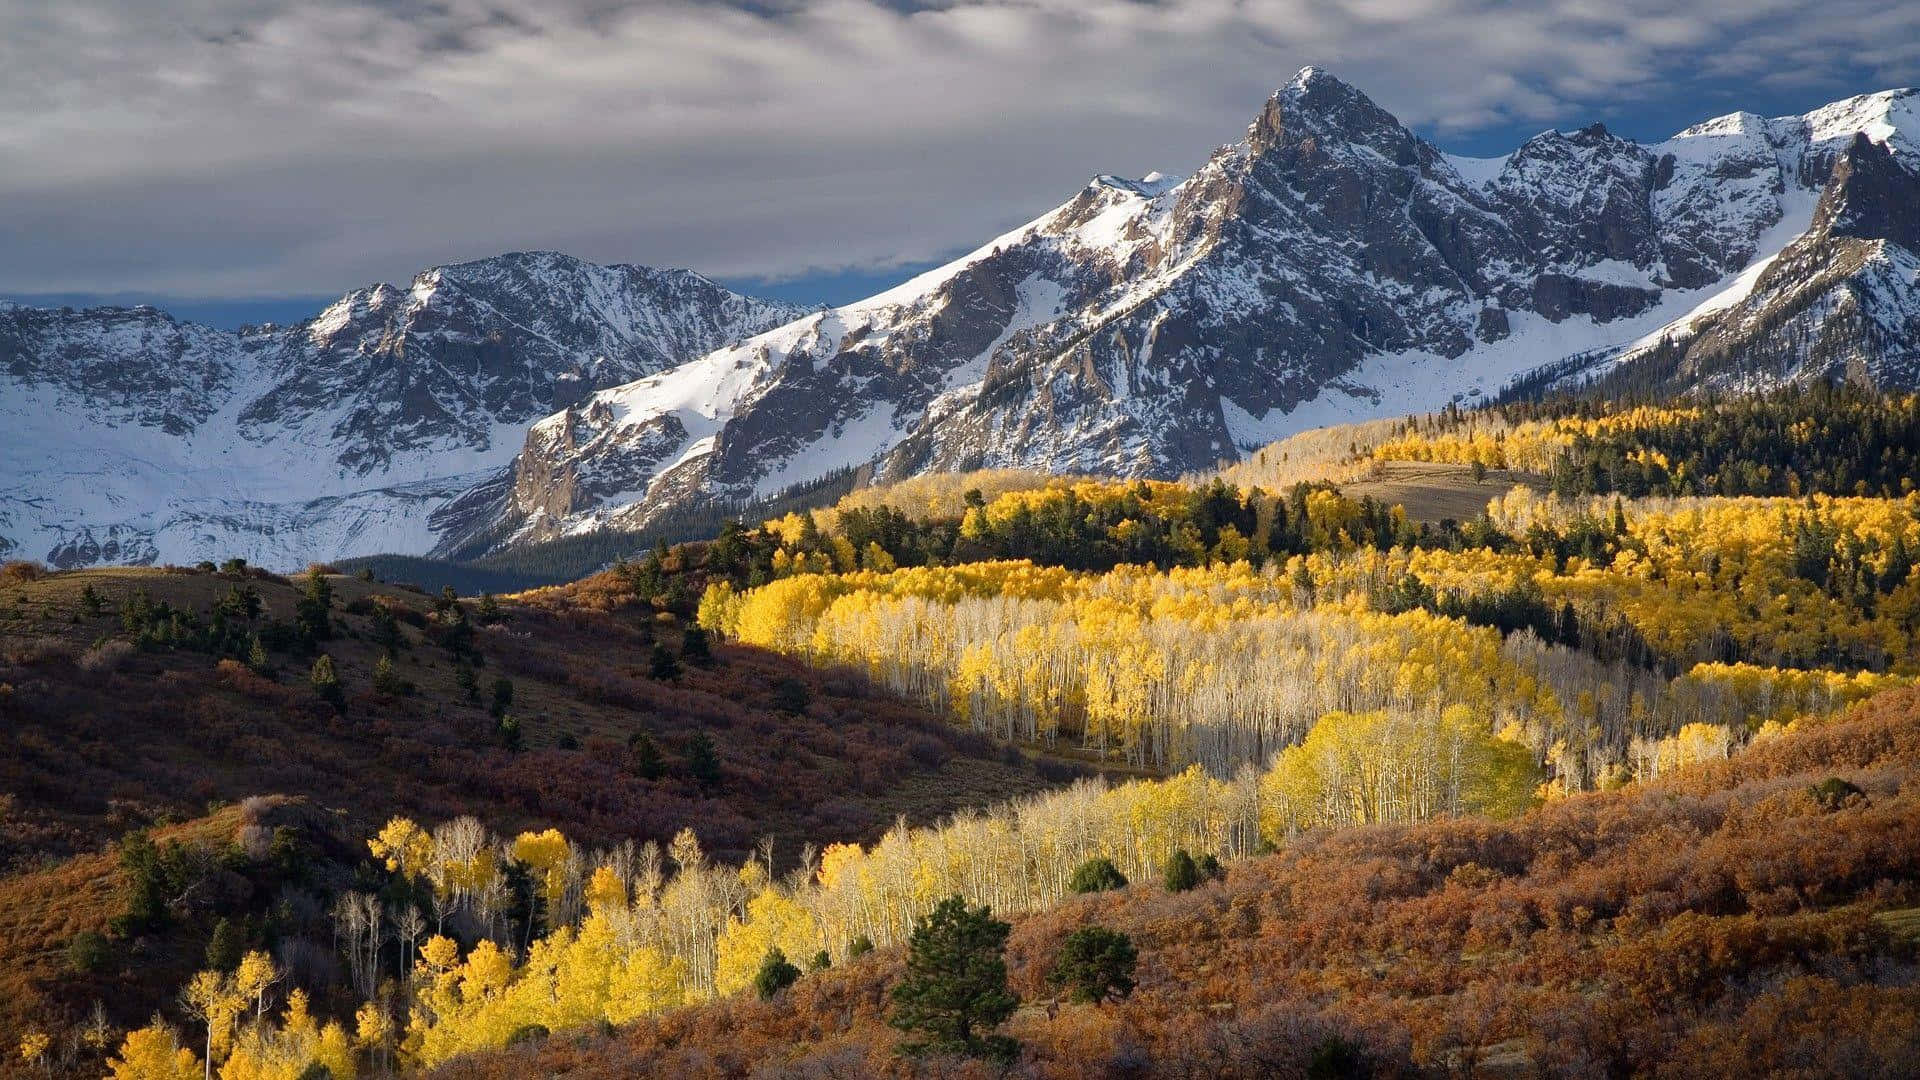 A breathtaking view of the scenic Aspen Colorado